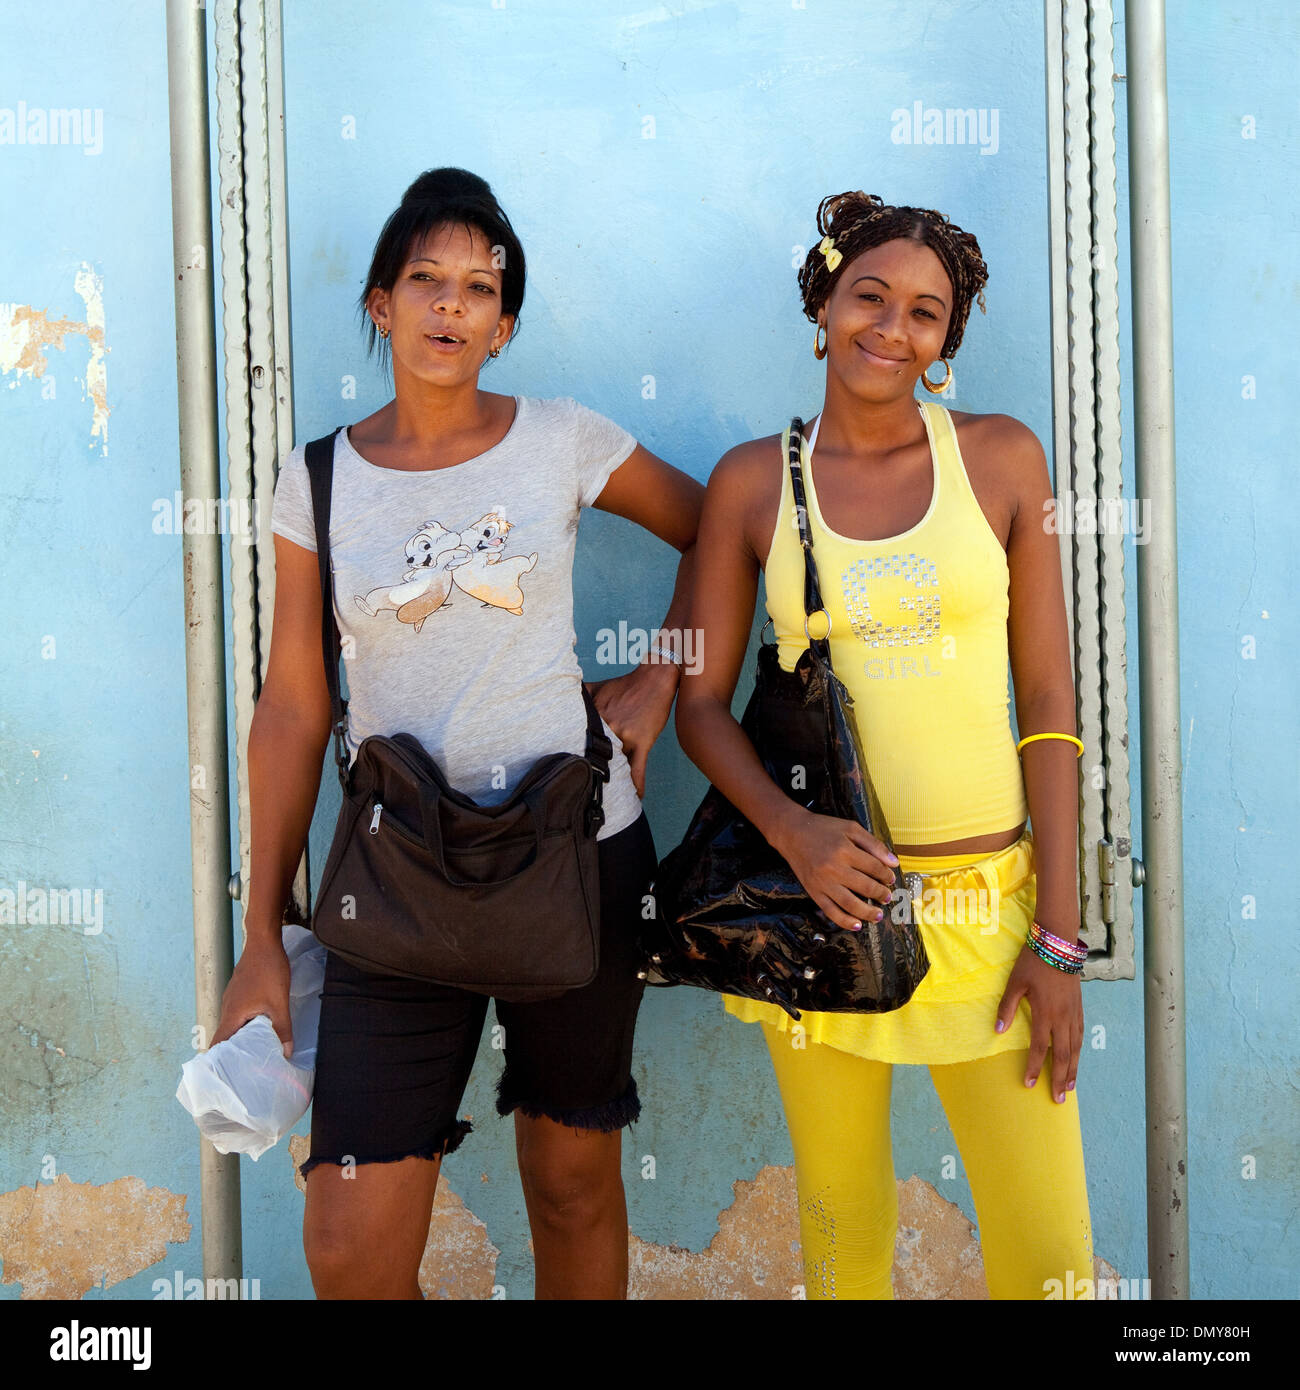 Lateinamerikanische Frauen; zwei kubanische Frauen im Alter ab 20 Jahren, posiert für ein Portrait, Trinidad, Kuba Karibik, Lateinamerika Stockfoto